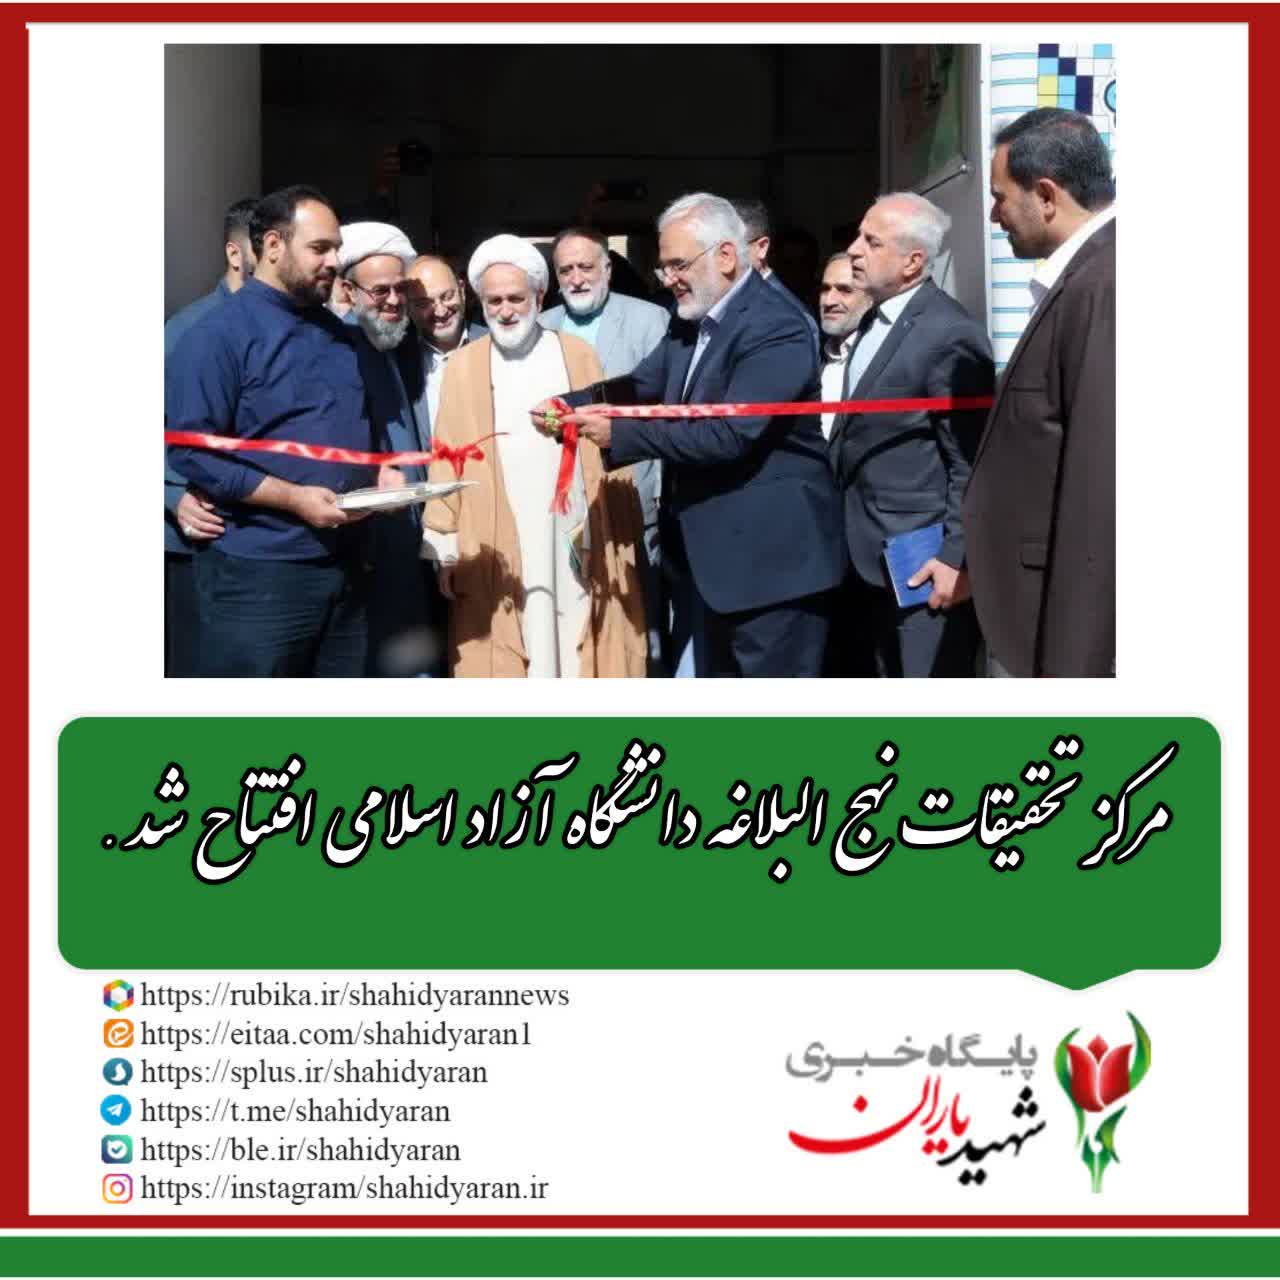 مرکز تحقیقات نهج البلاغه دانشگاه آزاد اسلامی افتتاح شد.